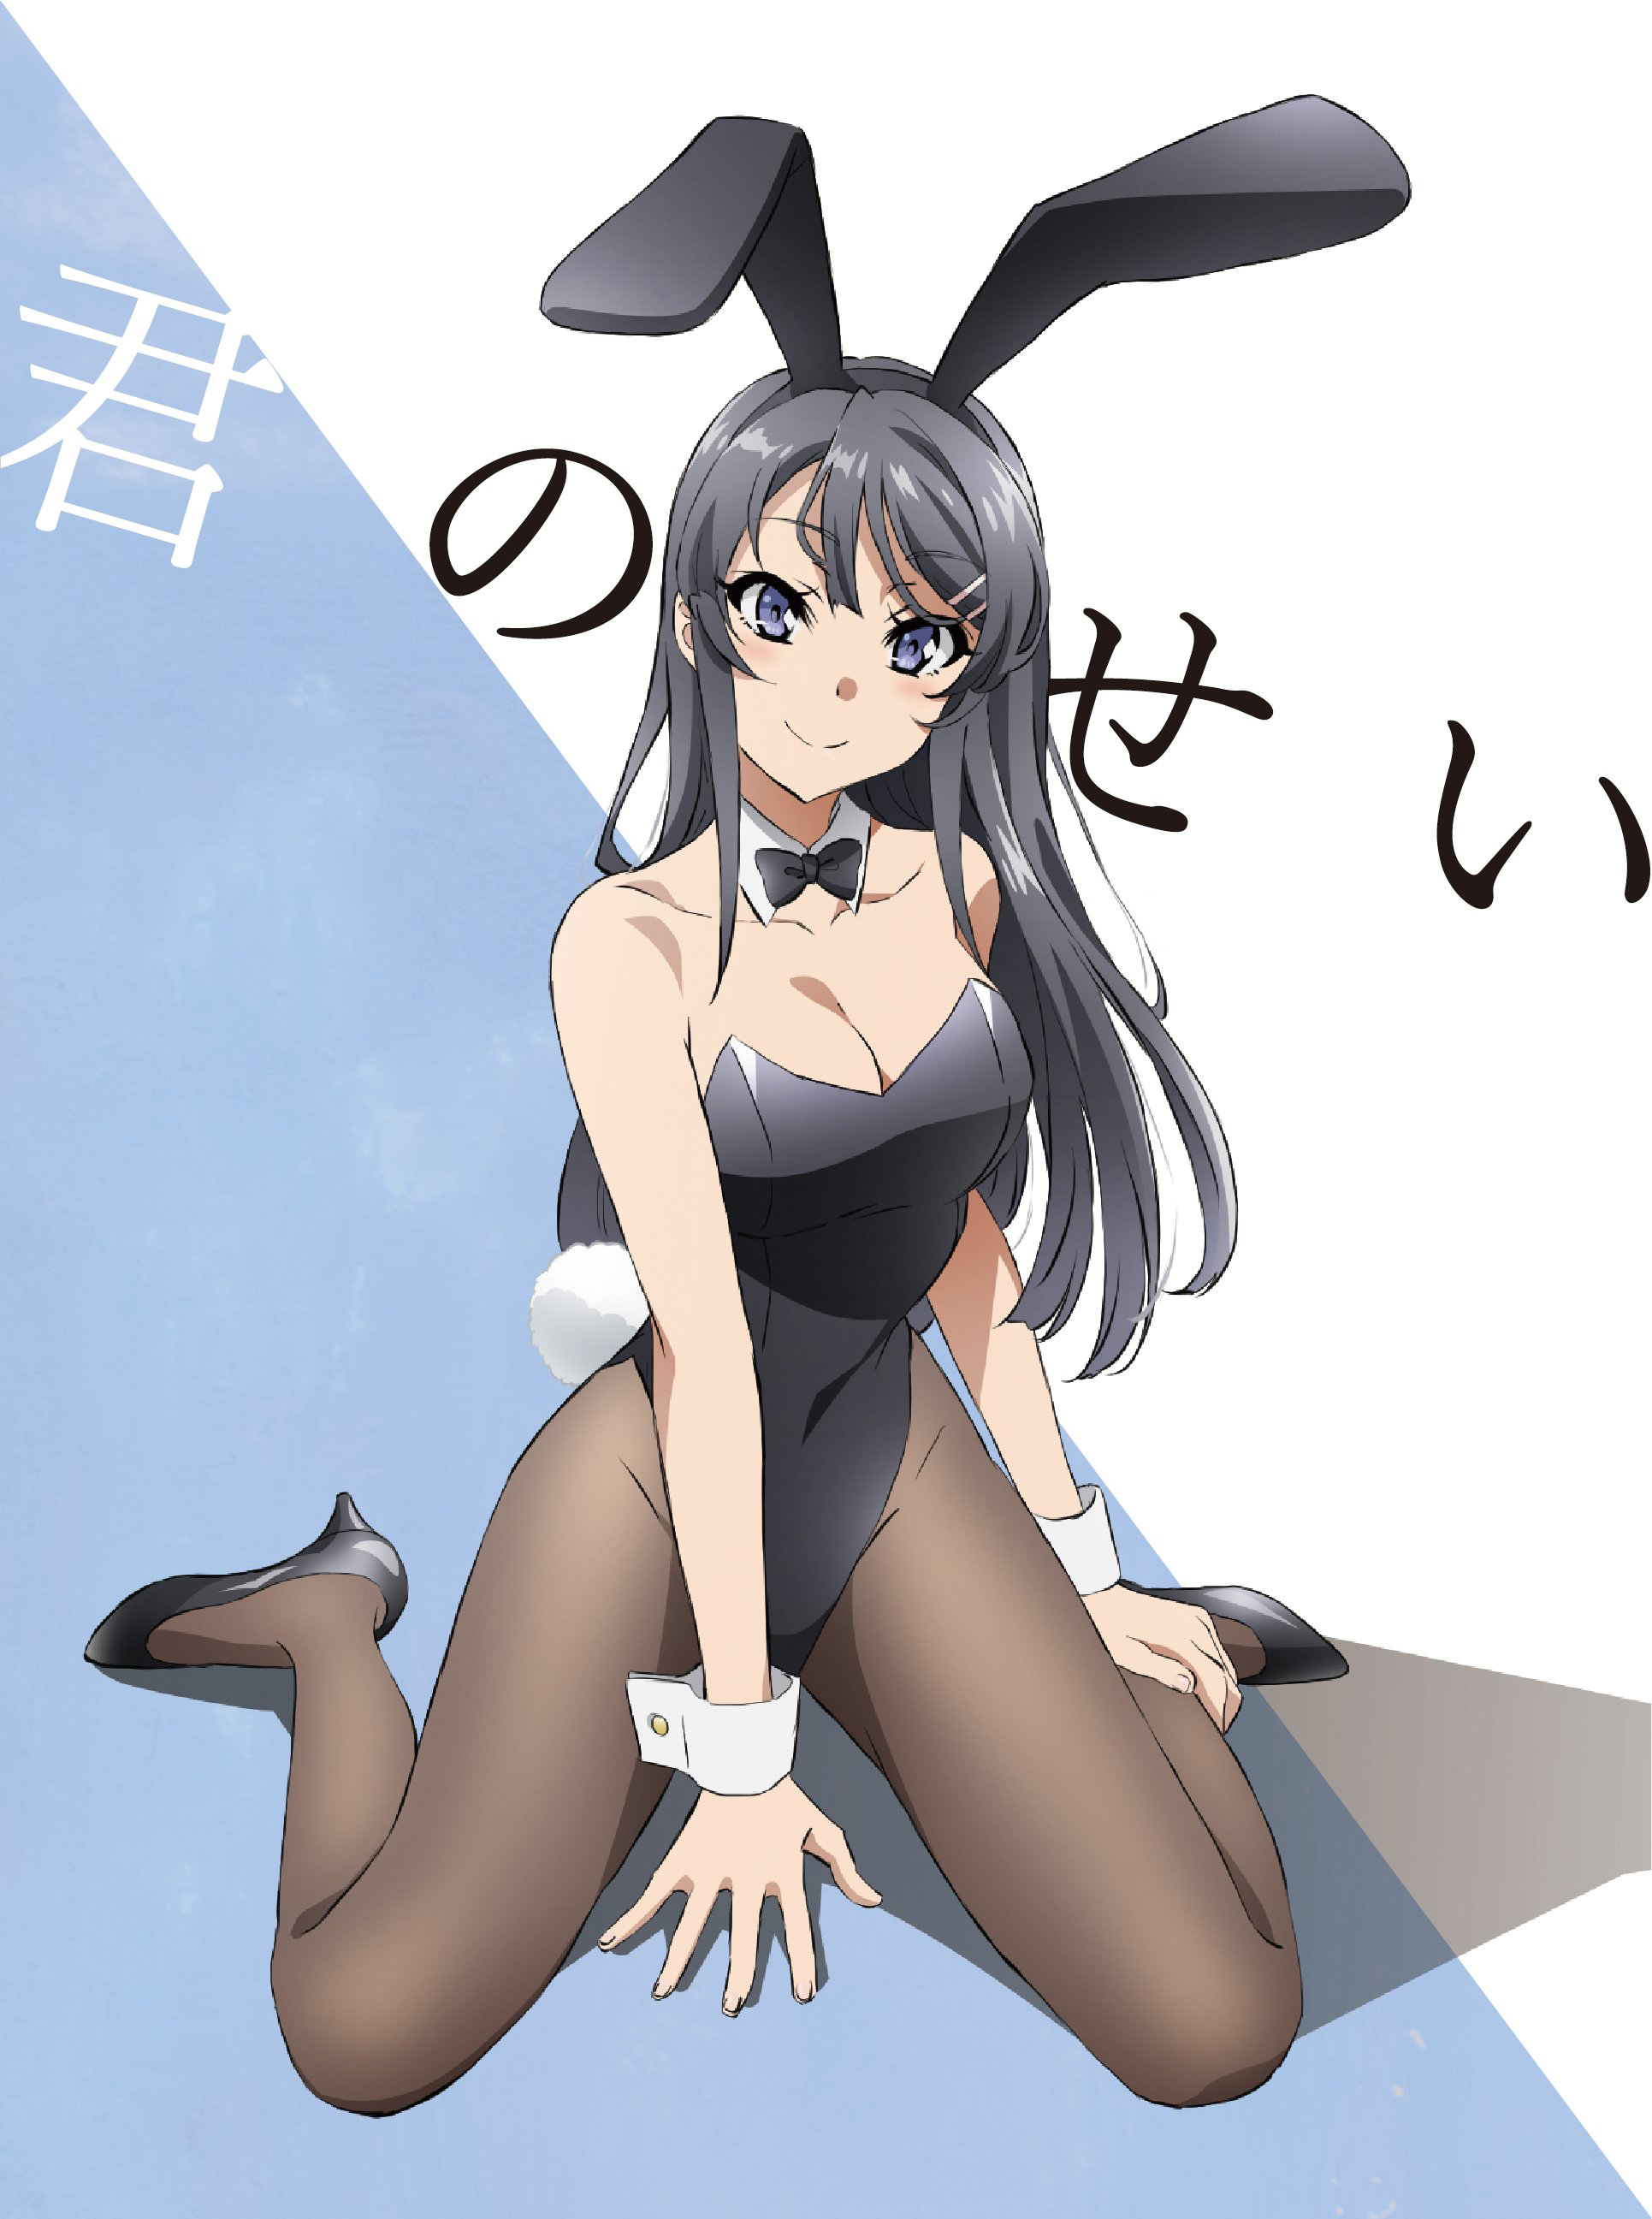 Seishun Buta Yarou wa Bunny Girl Senpai no Yume wo Minai BD/DVD